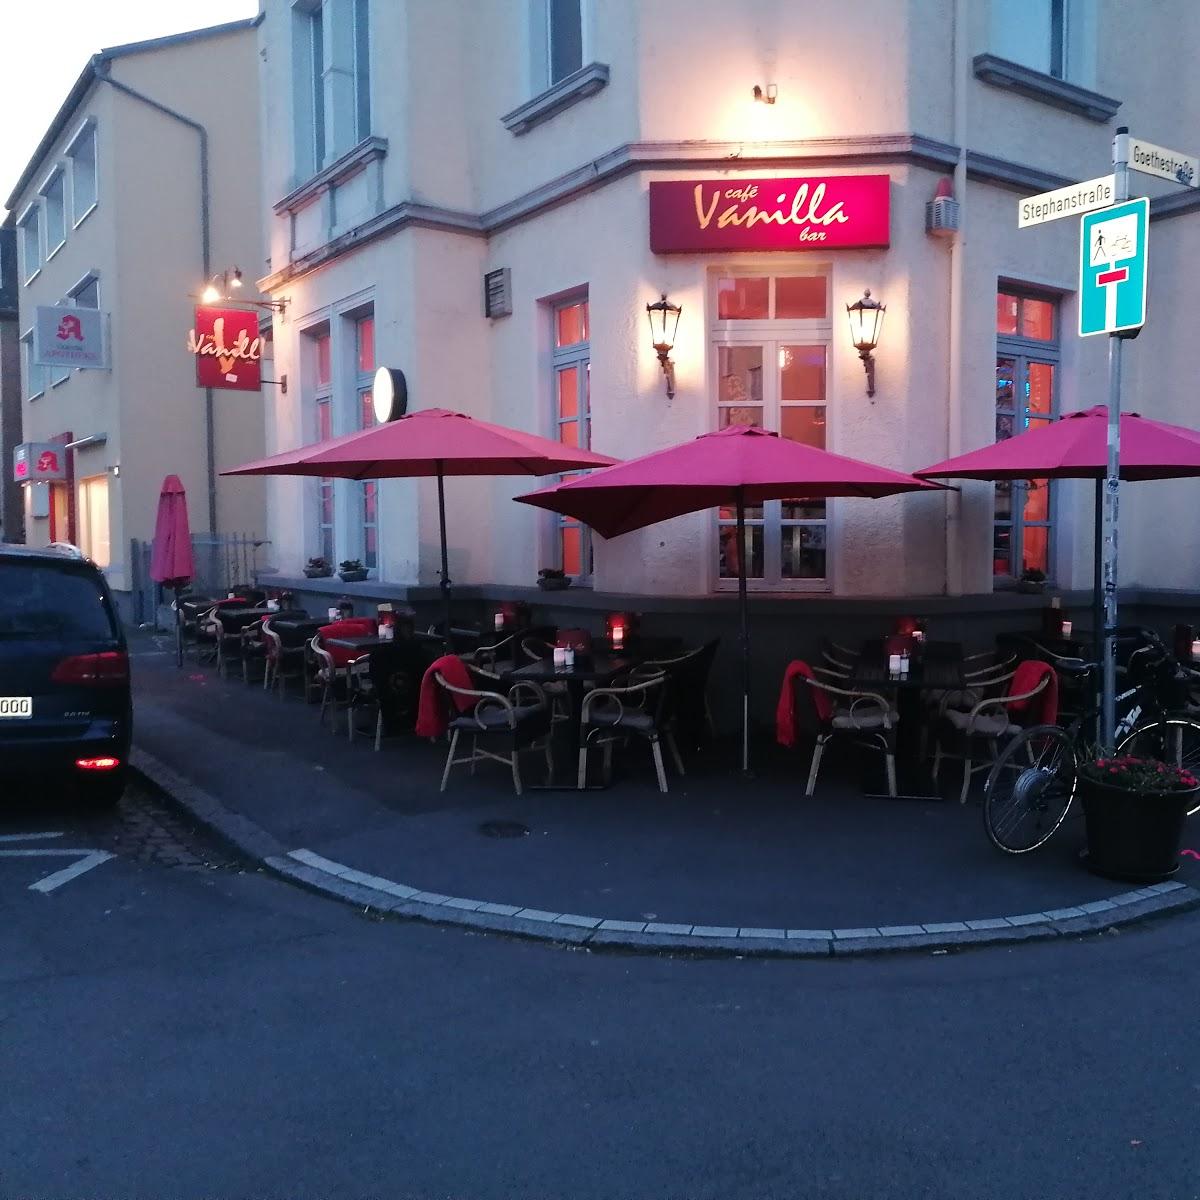 Restaurant "Vanilla" in Gießen